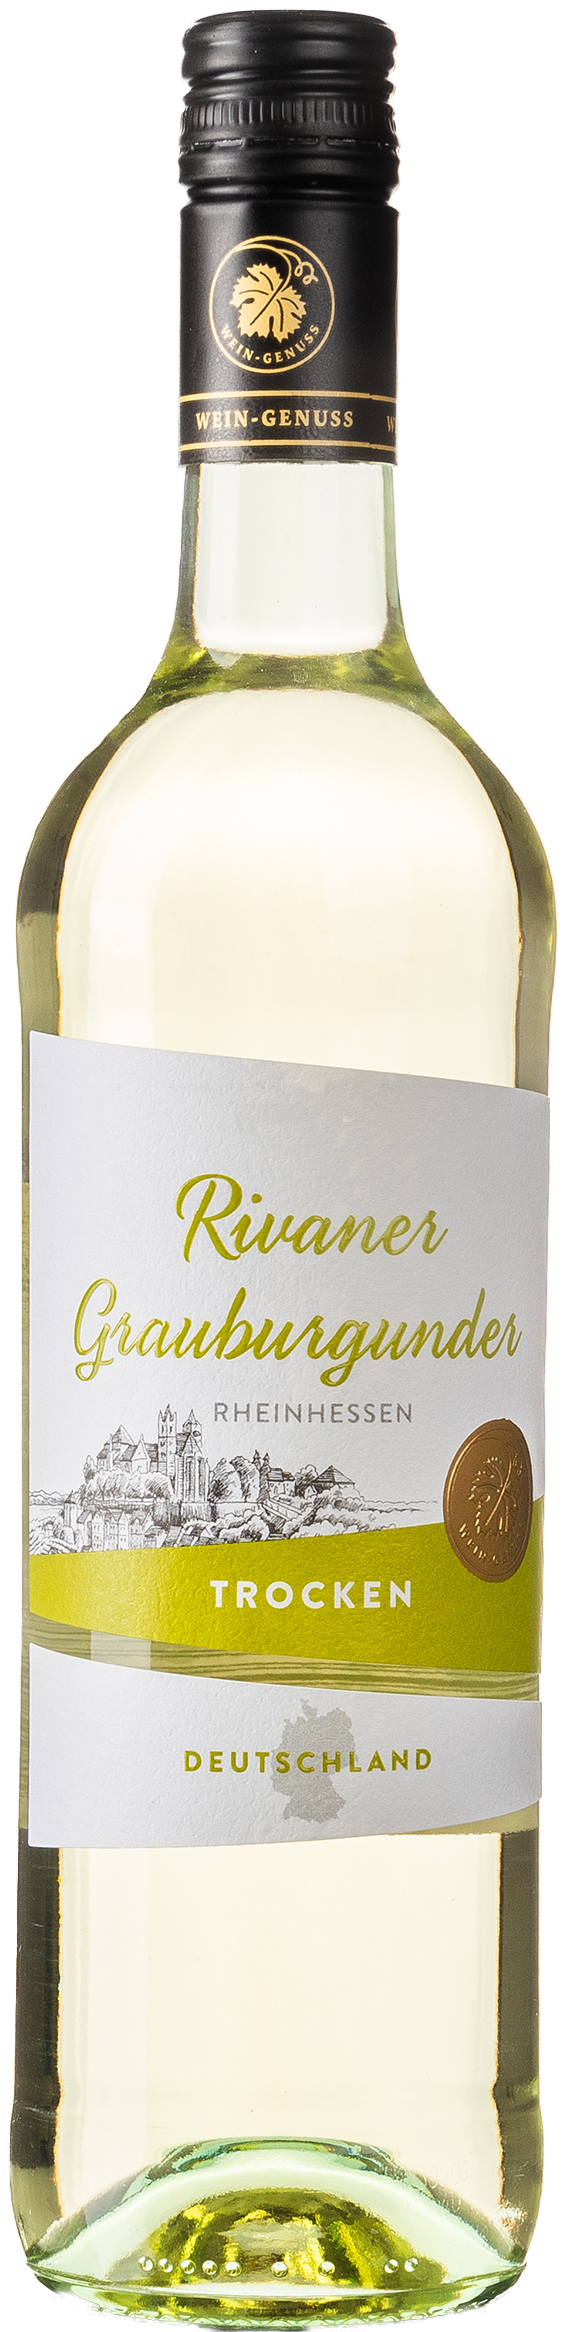 Wein-Genuss Rivaner Grauburgunder trocken 11,5% vol. 0,75L